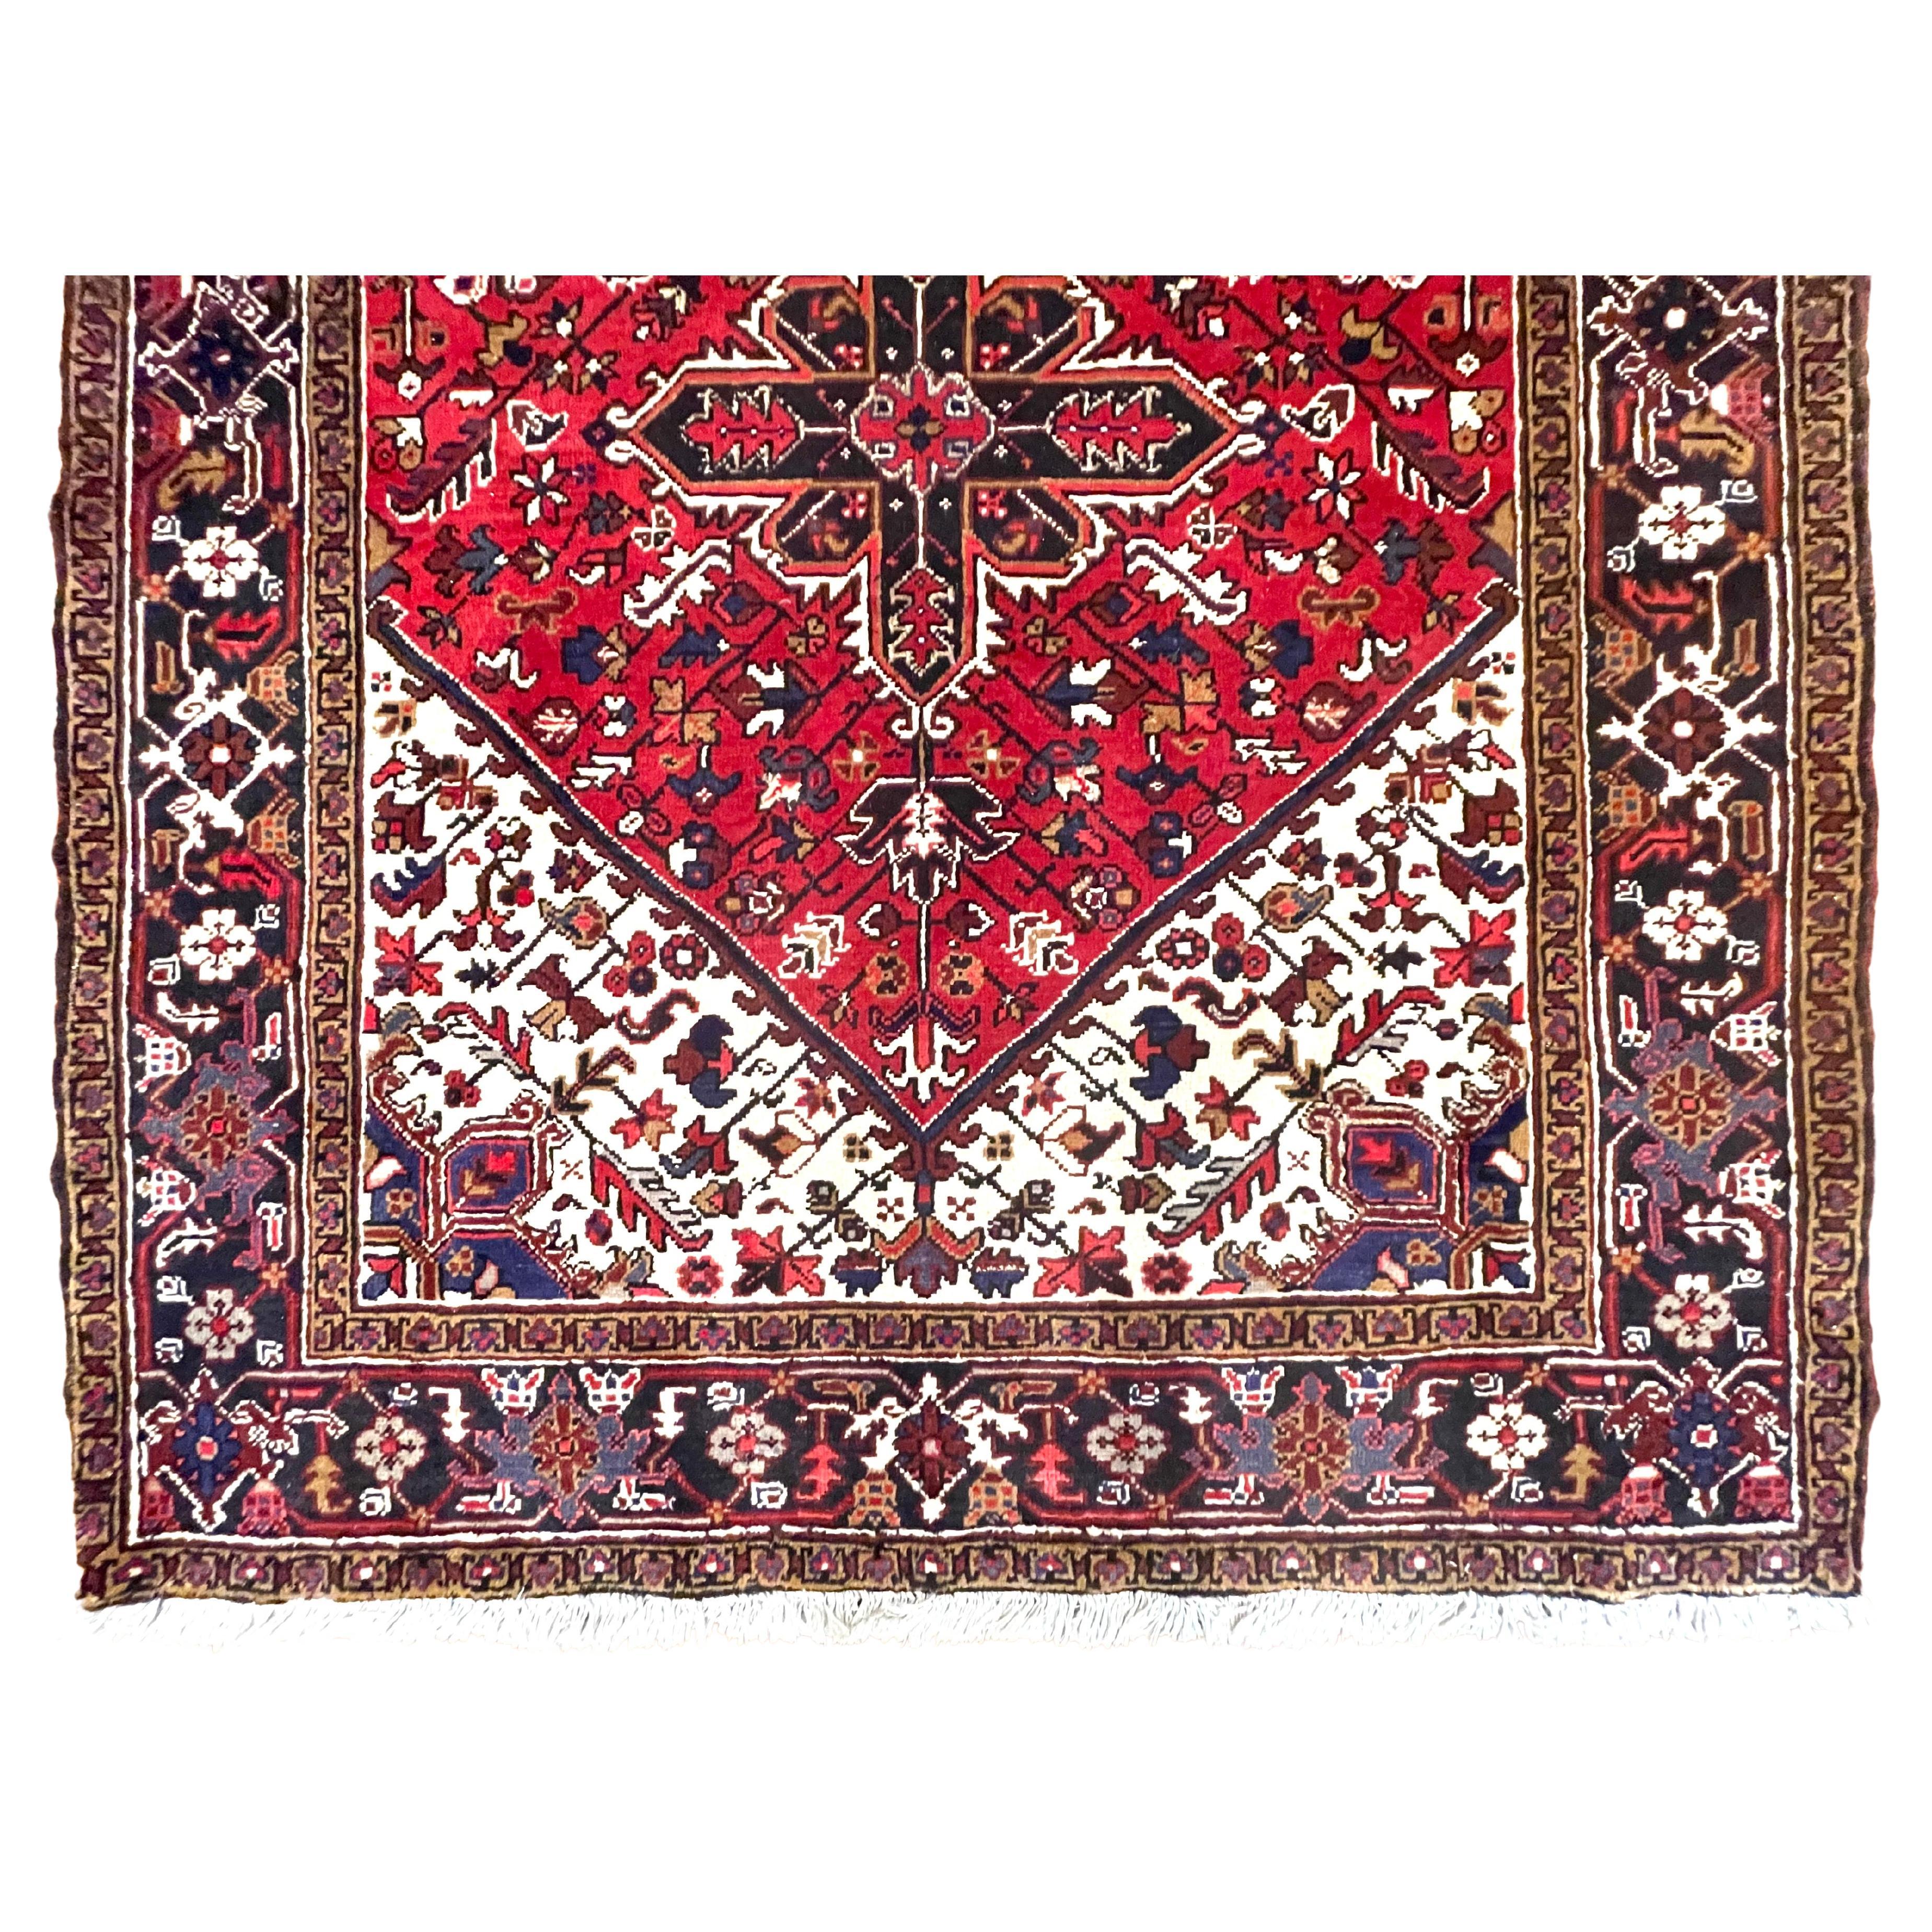 Présentation du tapis persan Heriz, les tapis Heriz sont des tapis persans provenant de la région de Heriz, en Azerbaïdjan oriental, dans le nord-ouest de l'Iran, au nord-est de Tabriz. Ce tapis a des poils en laine et une base en coton, noué à la